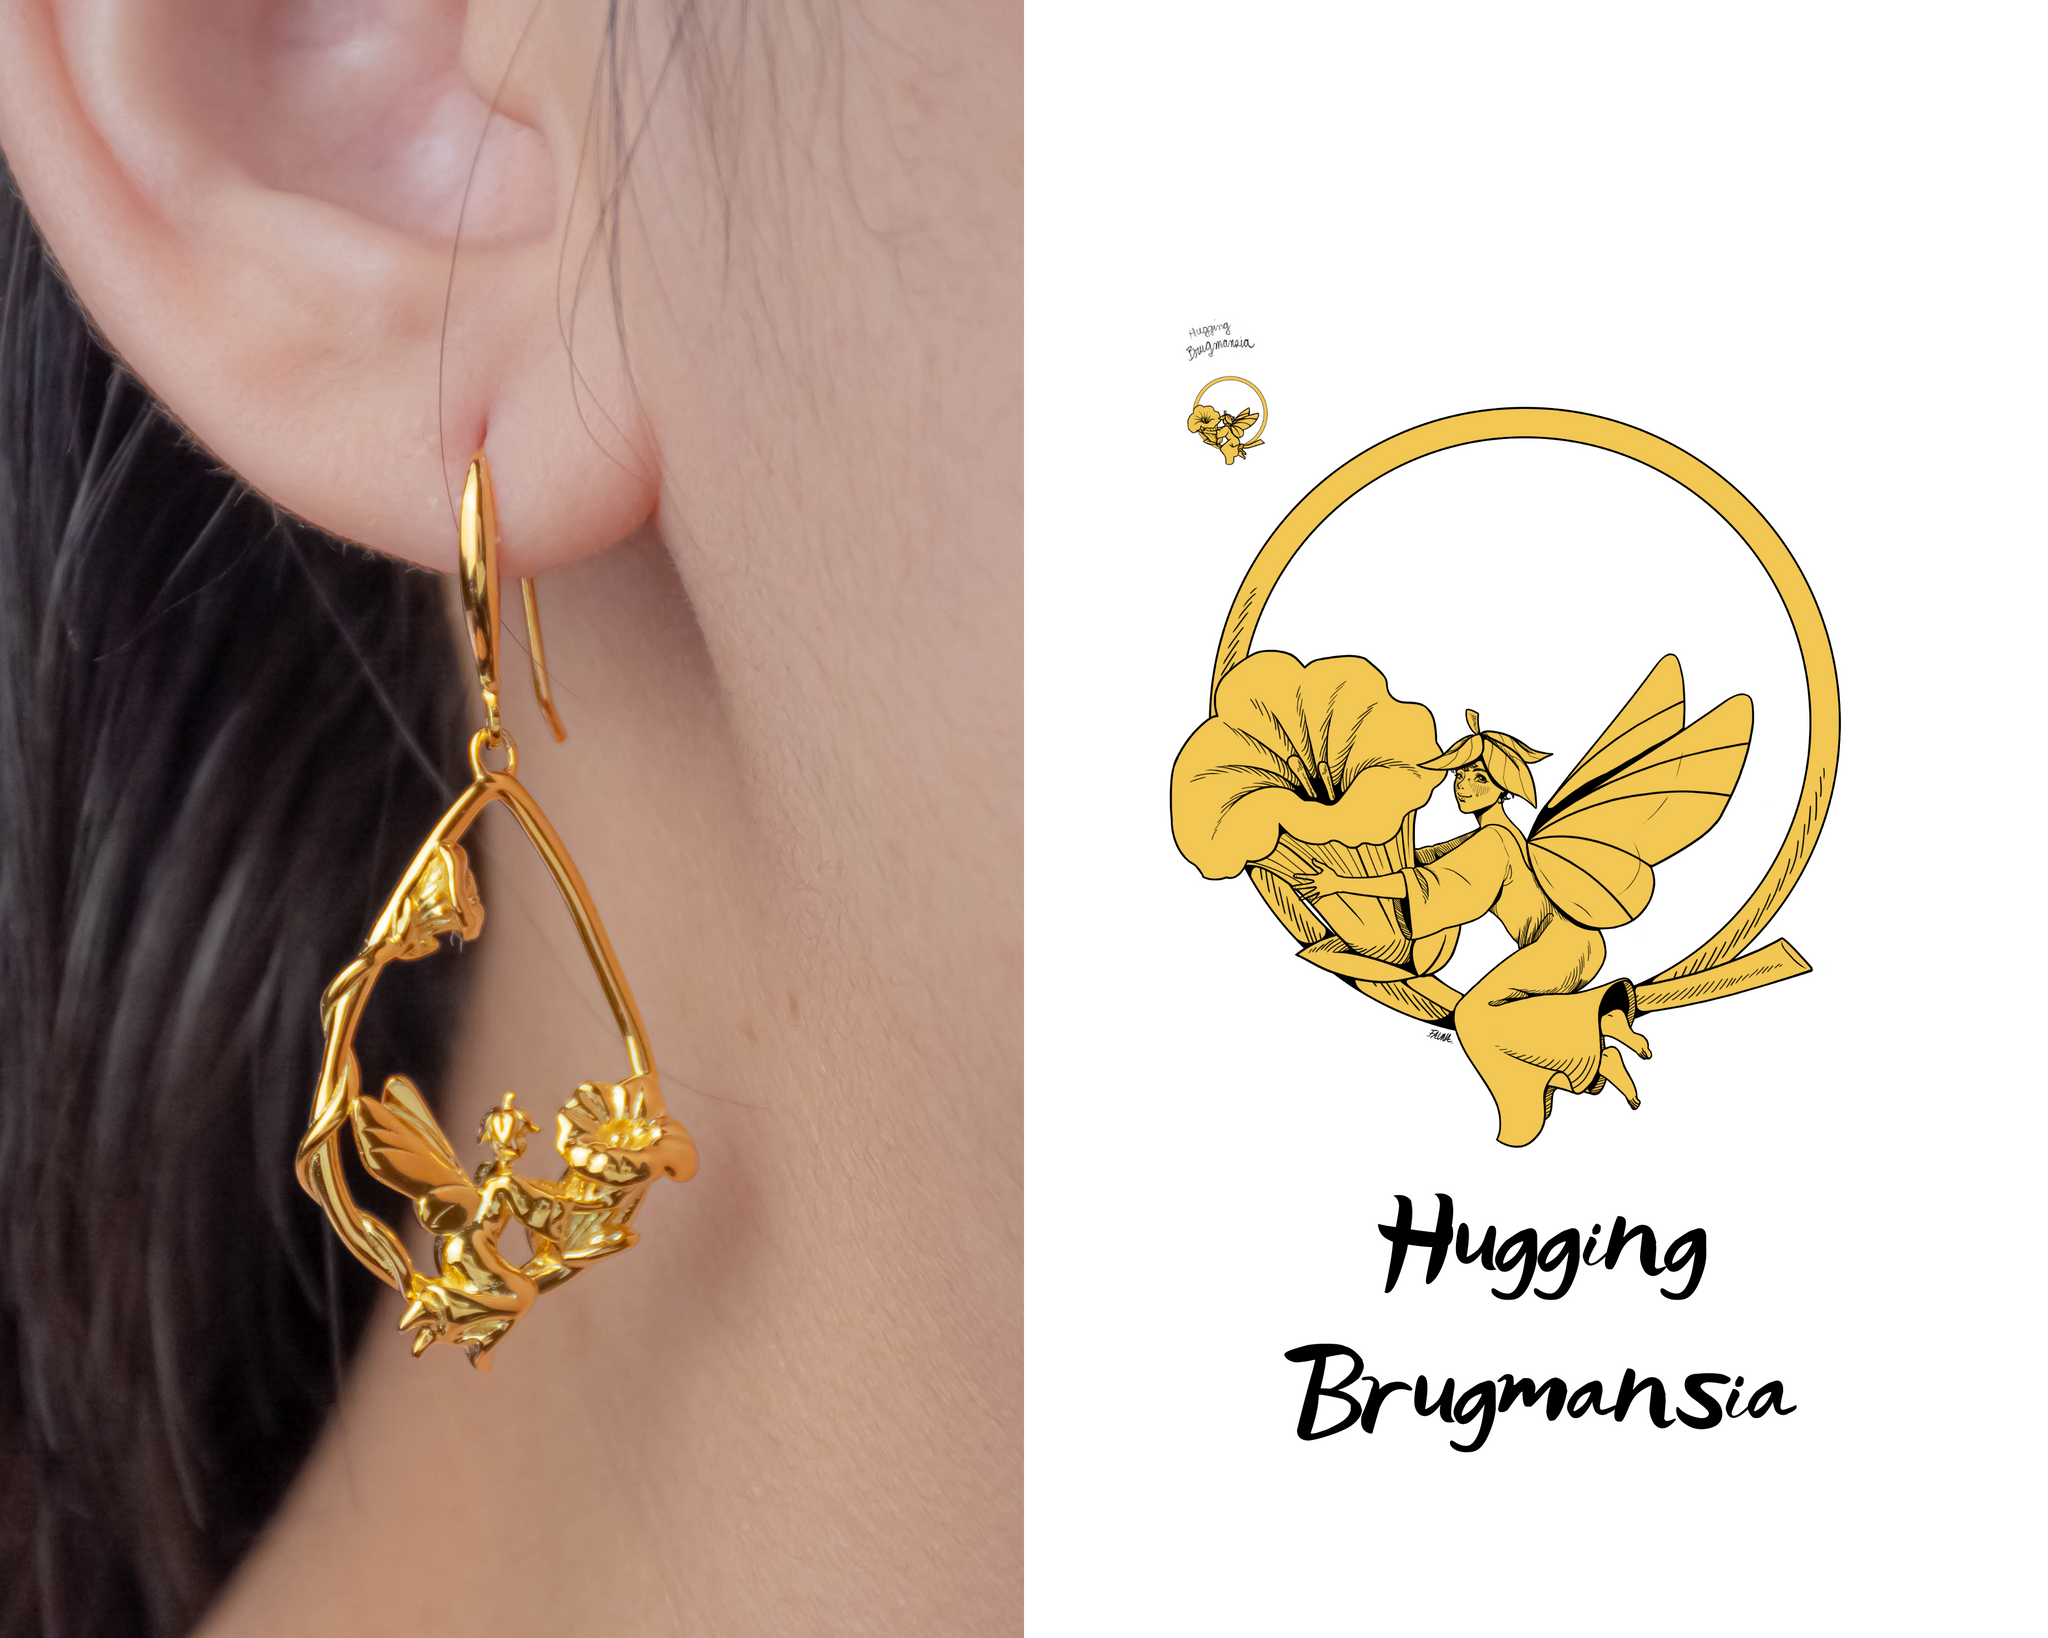 Baby's Breath Alley - Flower Fairy-Burmansia Earrings